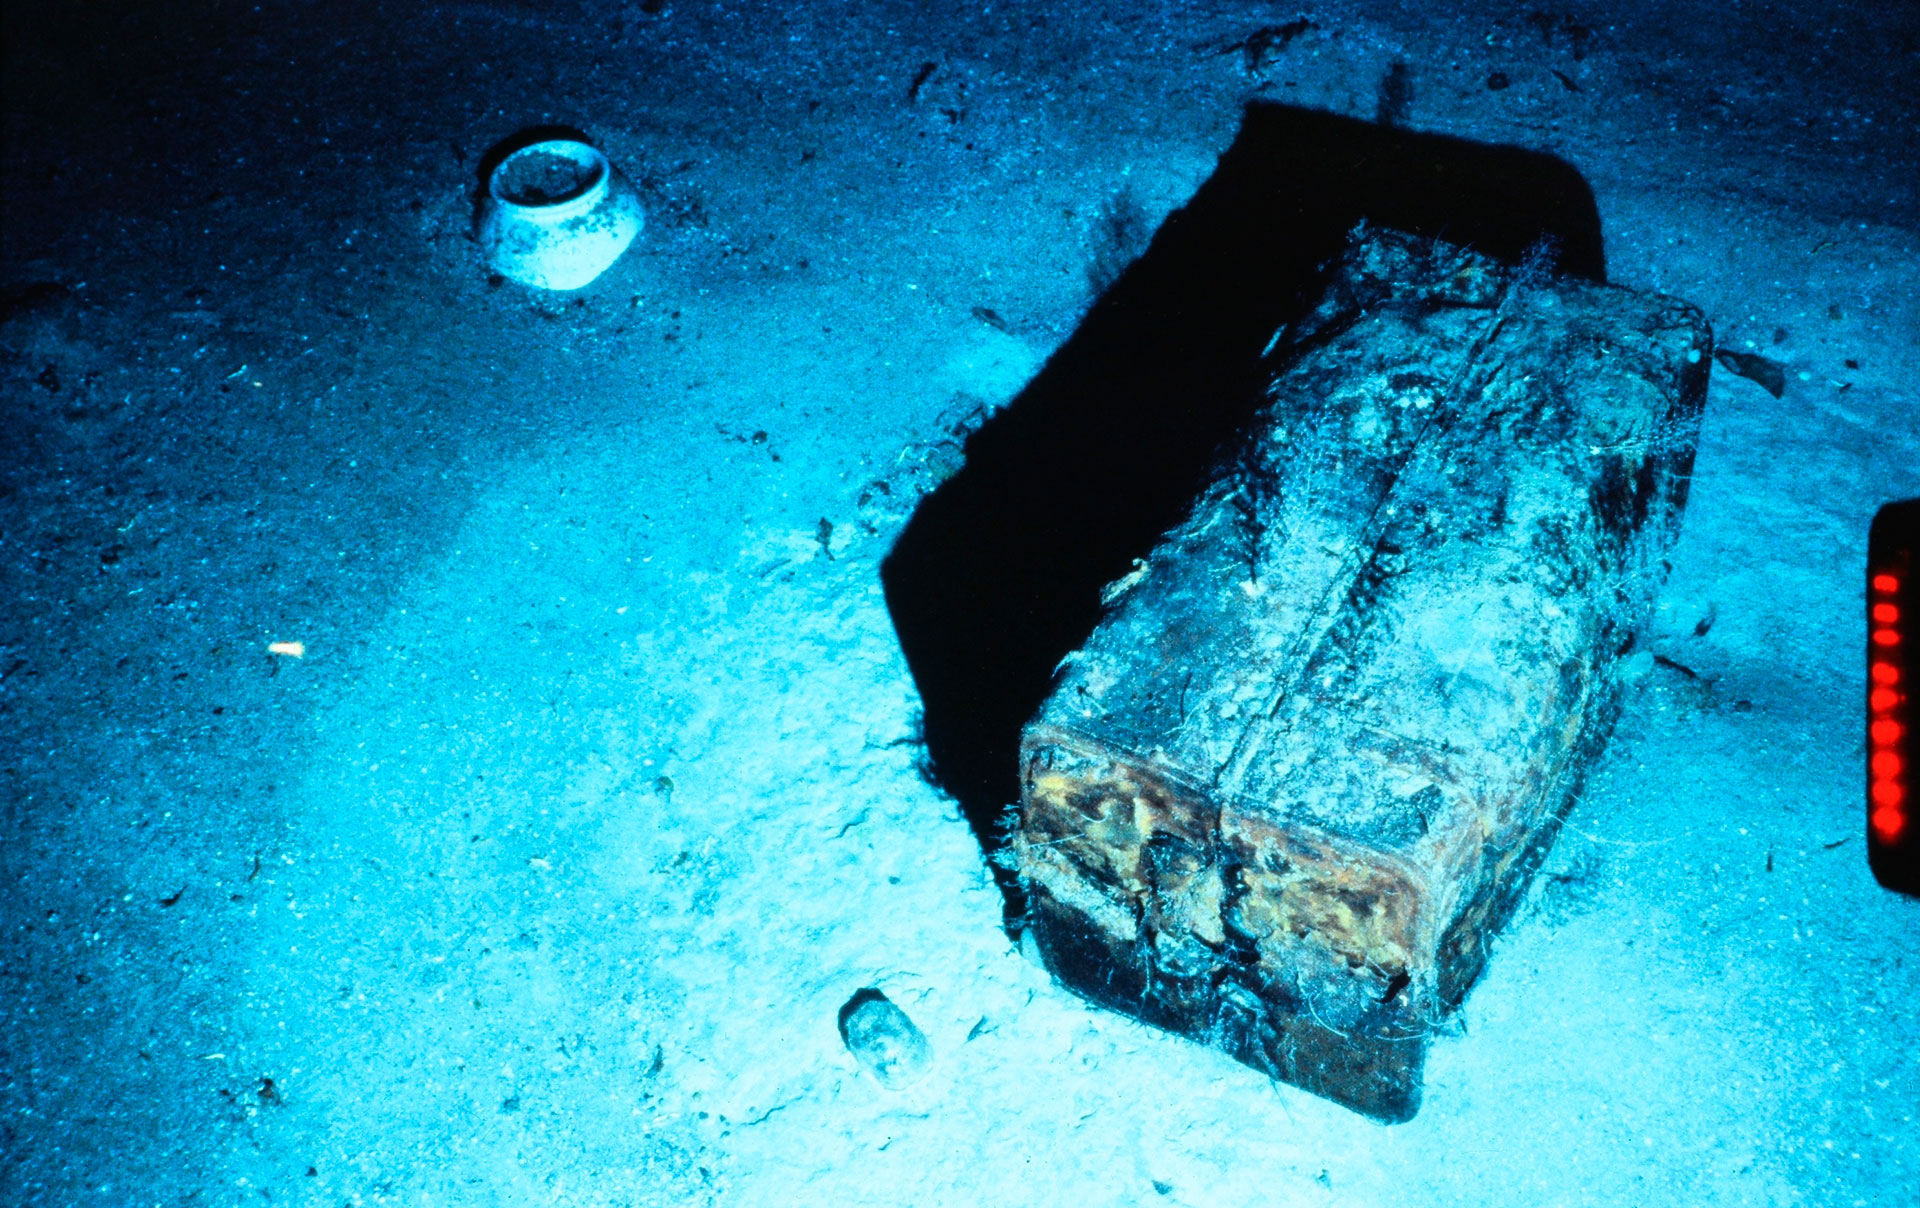 Un baúl perteneciente a los pasajeros de S.S. Central America Ansel y Adeline Easton que fue descubierto en el lecho marino del Océano Atlántico en 1990  (California Gold Marketing Group a través de AP)

